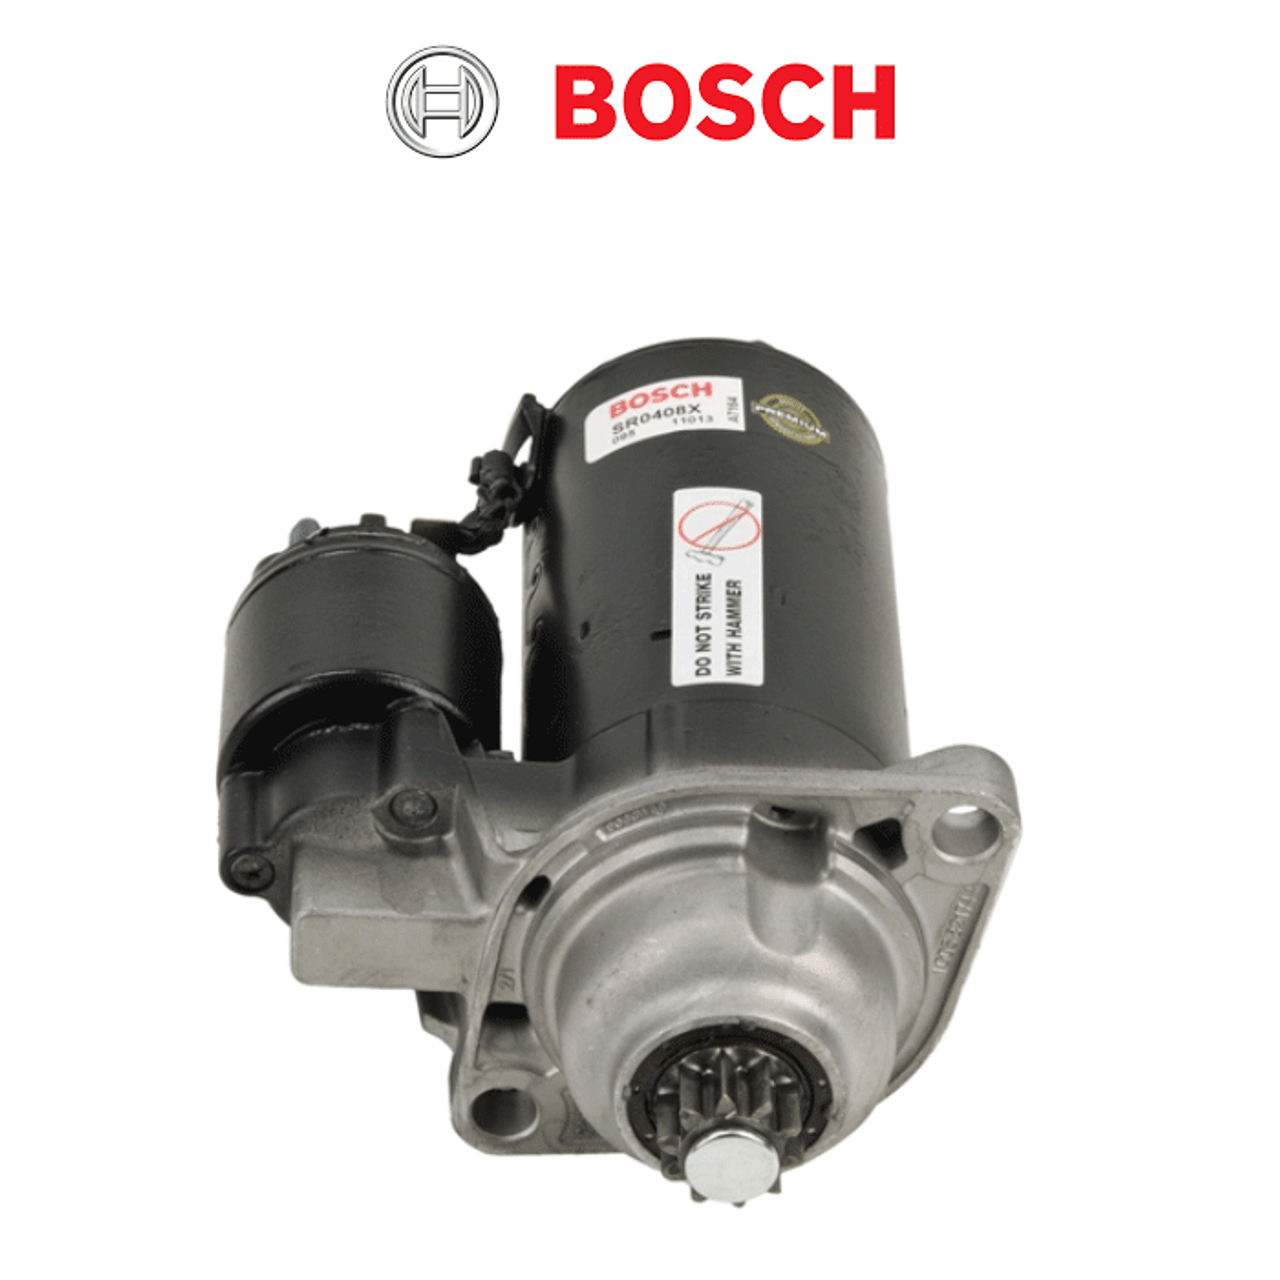 Bosch Hi Torque Starter | Van Cafe